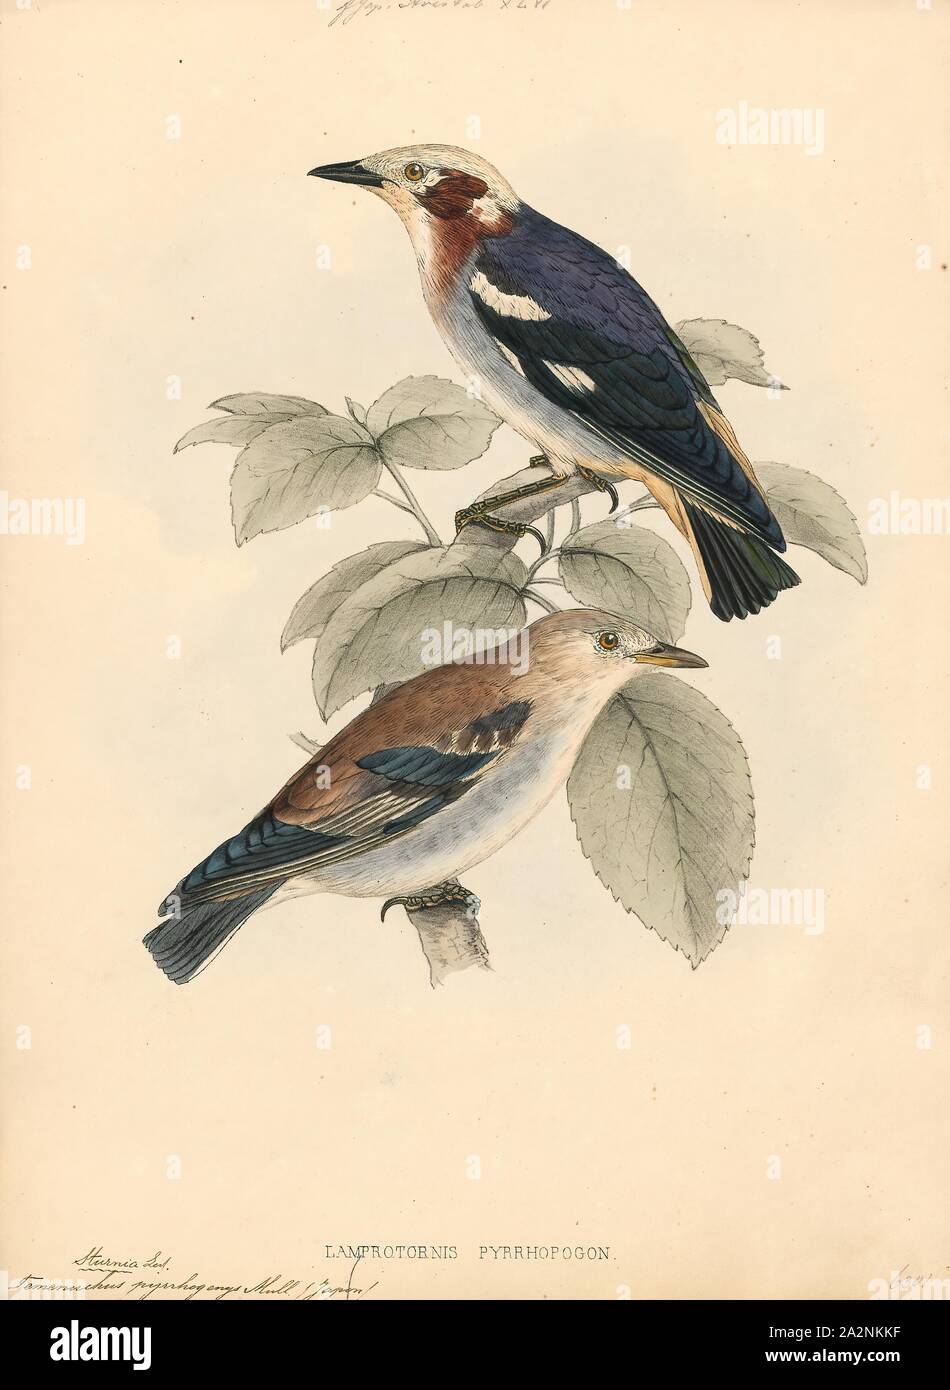 Pyrrhogenys Temenuchus, Imprimer, le brahminy starling brahminy ou myna (Sturnia pagodarum) est un membre de la famille de starling oiseaux. Il se tient généralement en couples ou en petites bandes dans les habitats ouverts sur les plaines du sous-continent indien, 1833-1850. Banque D'Images